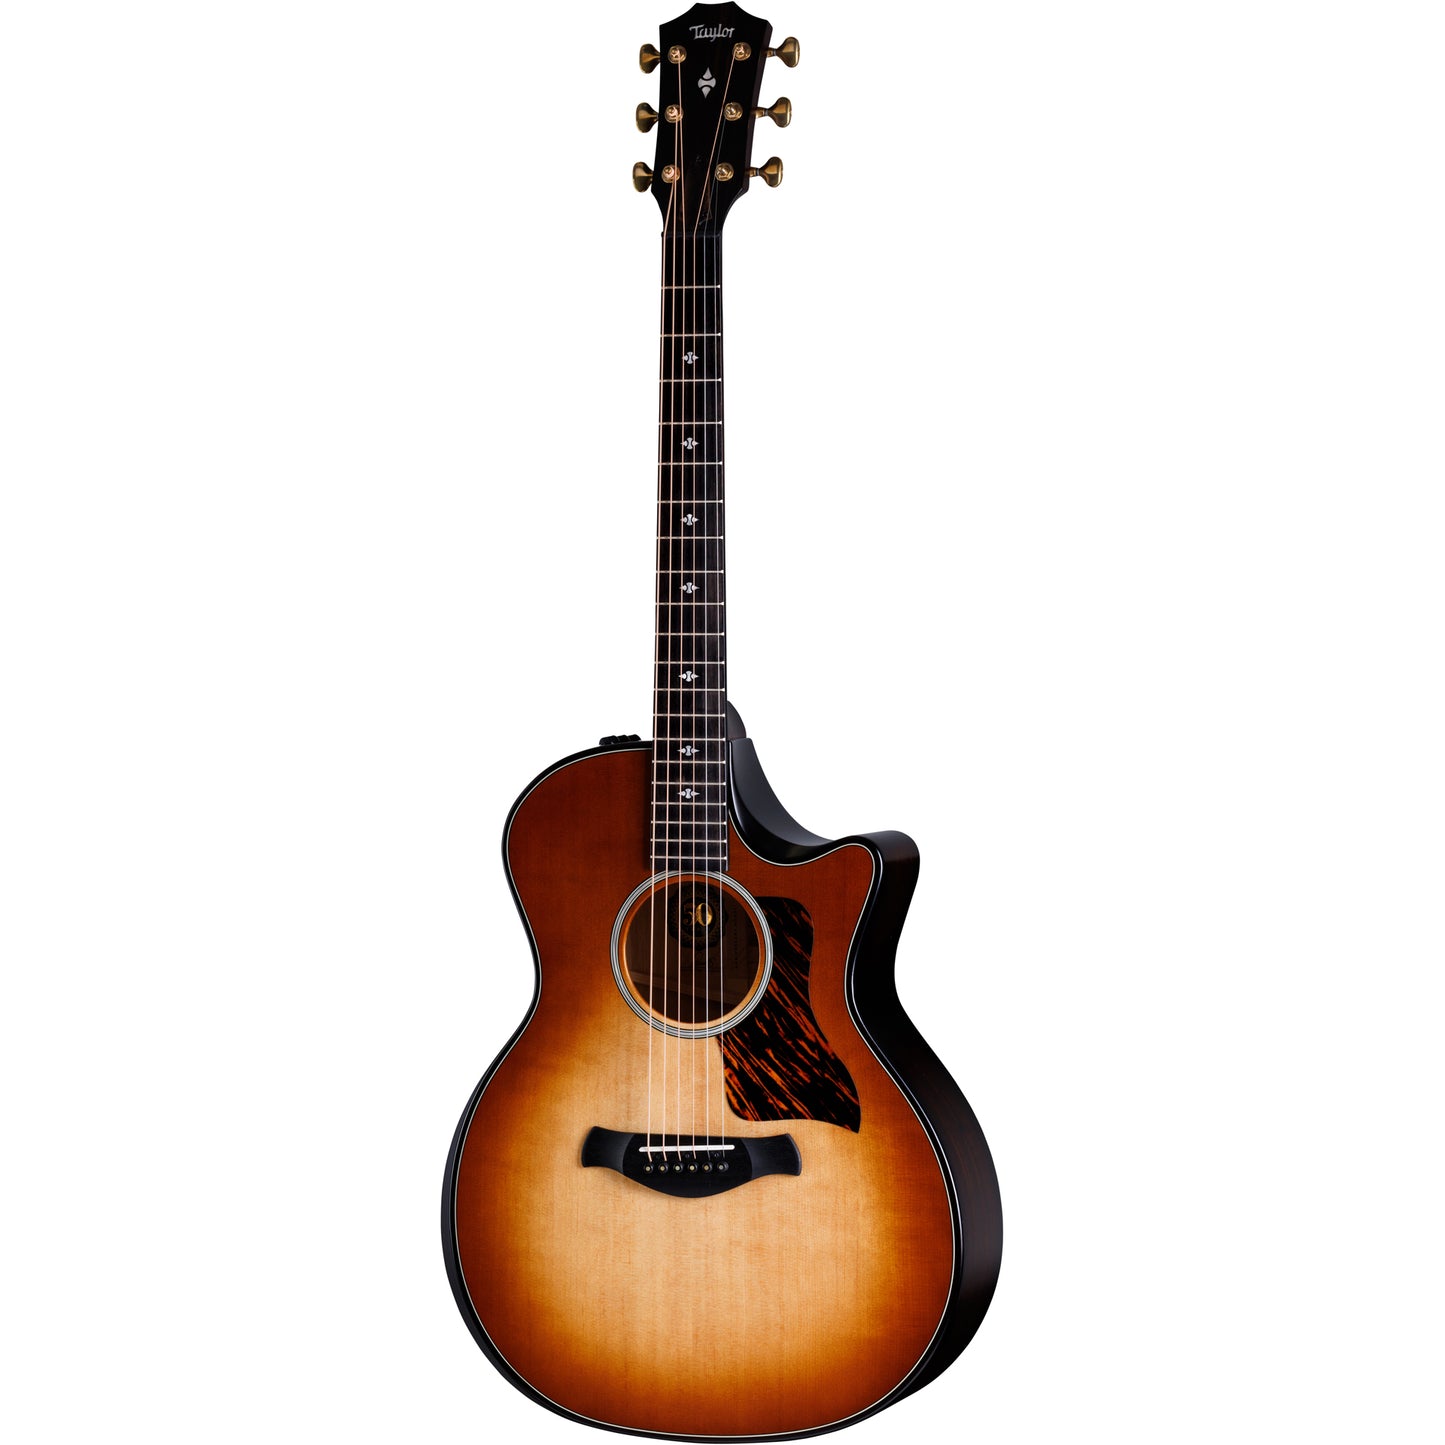 Taylor 50th Builder's Edition 314ce LTD Acoustic Electric Guitar - Kona Burst